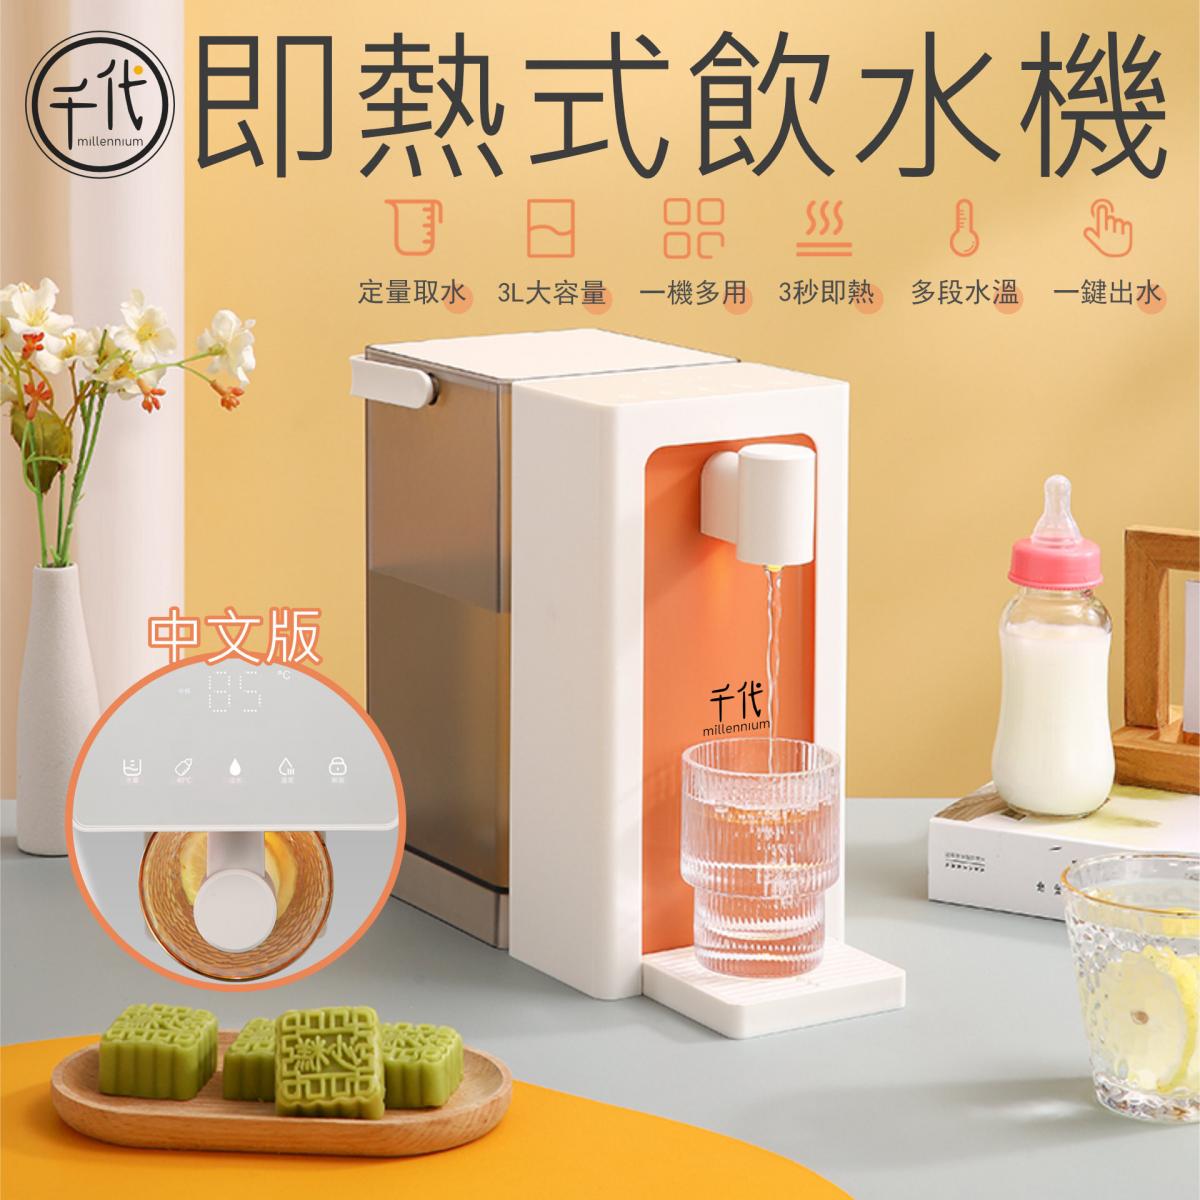 即熱式飲水機3L (中文版)|香港行貨恒溫一鍵出水機 |新鮮即煲咖啡沖奶機 |抗菌水箱 |自定熱水溫度